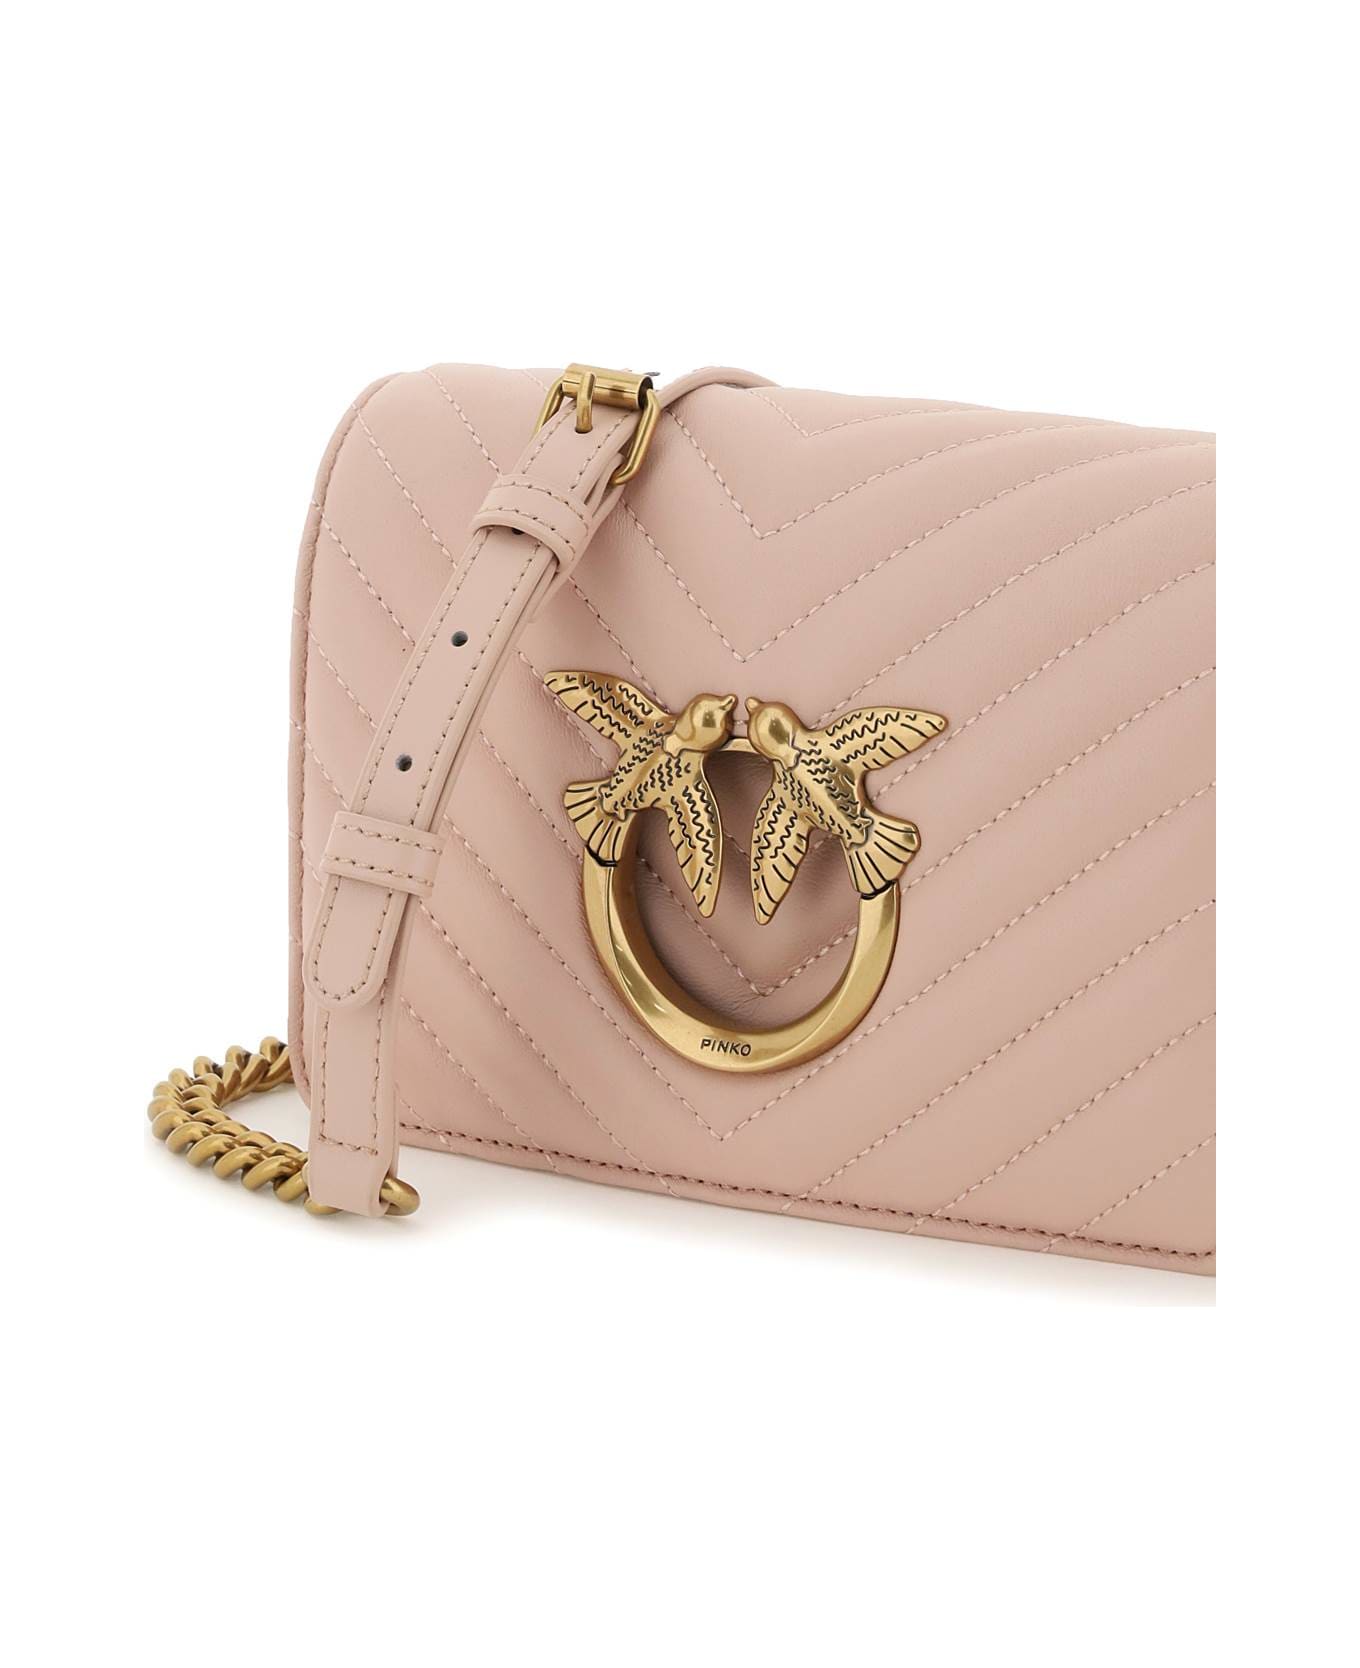 Pinko Love Click Mini Chevron Bag - CIPRIA ANTIQUE GOLD (Pink)